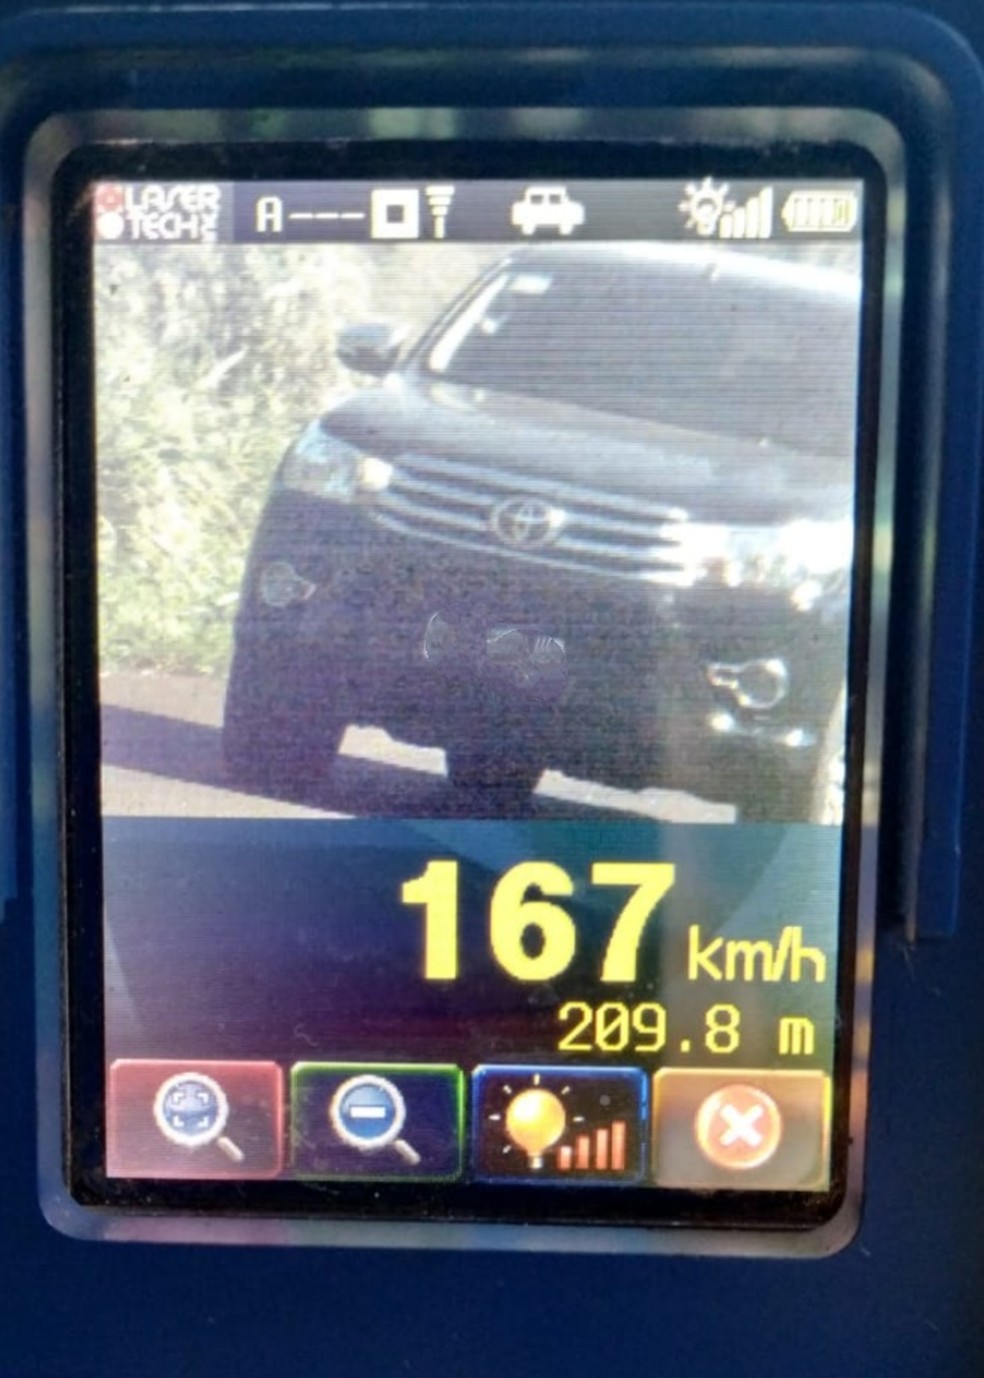  Motorista é flagrado a 167 km/h na PR-486, em Cascavel